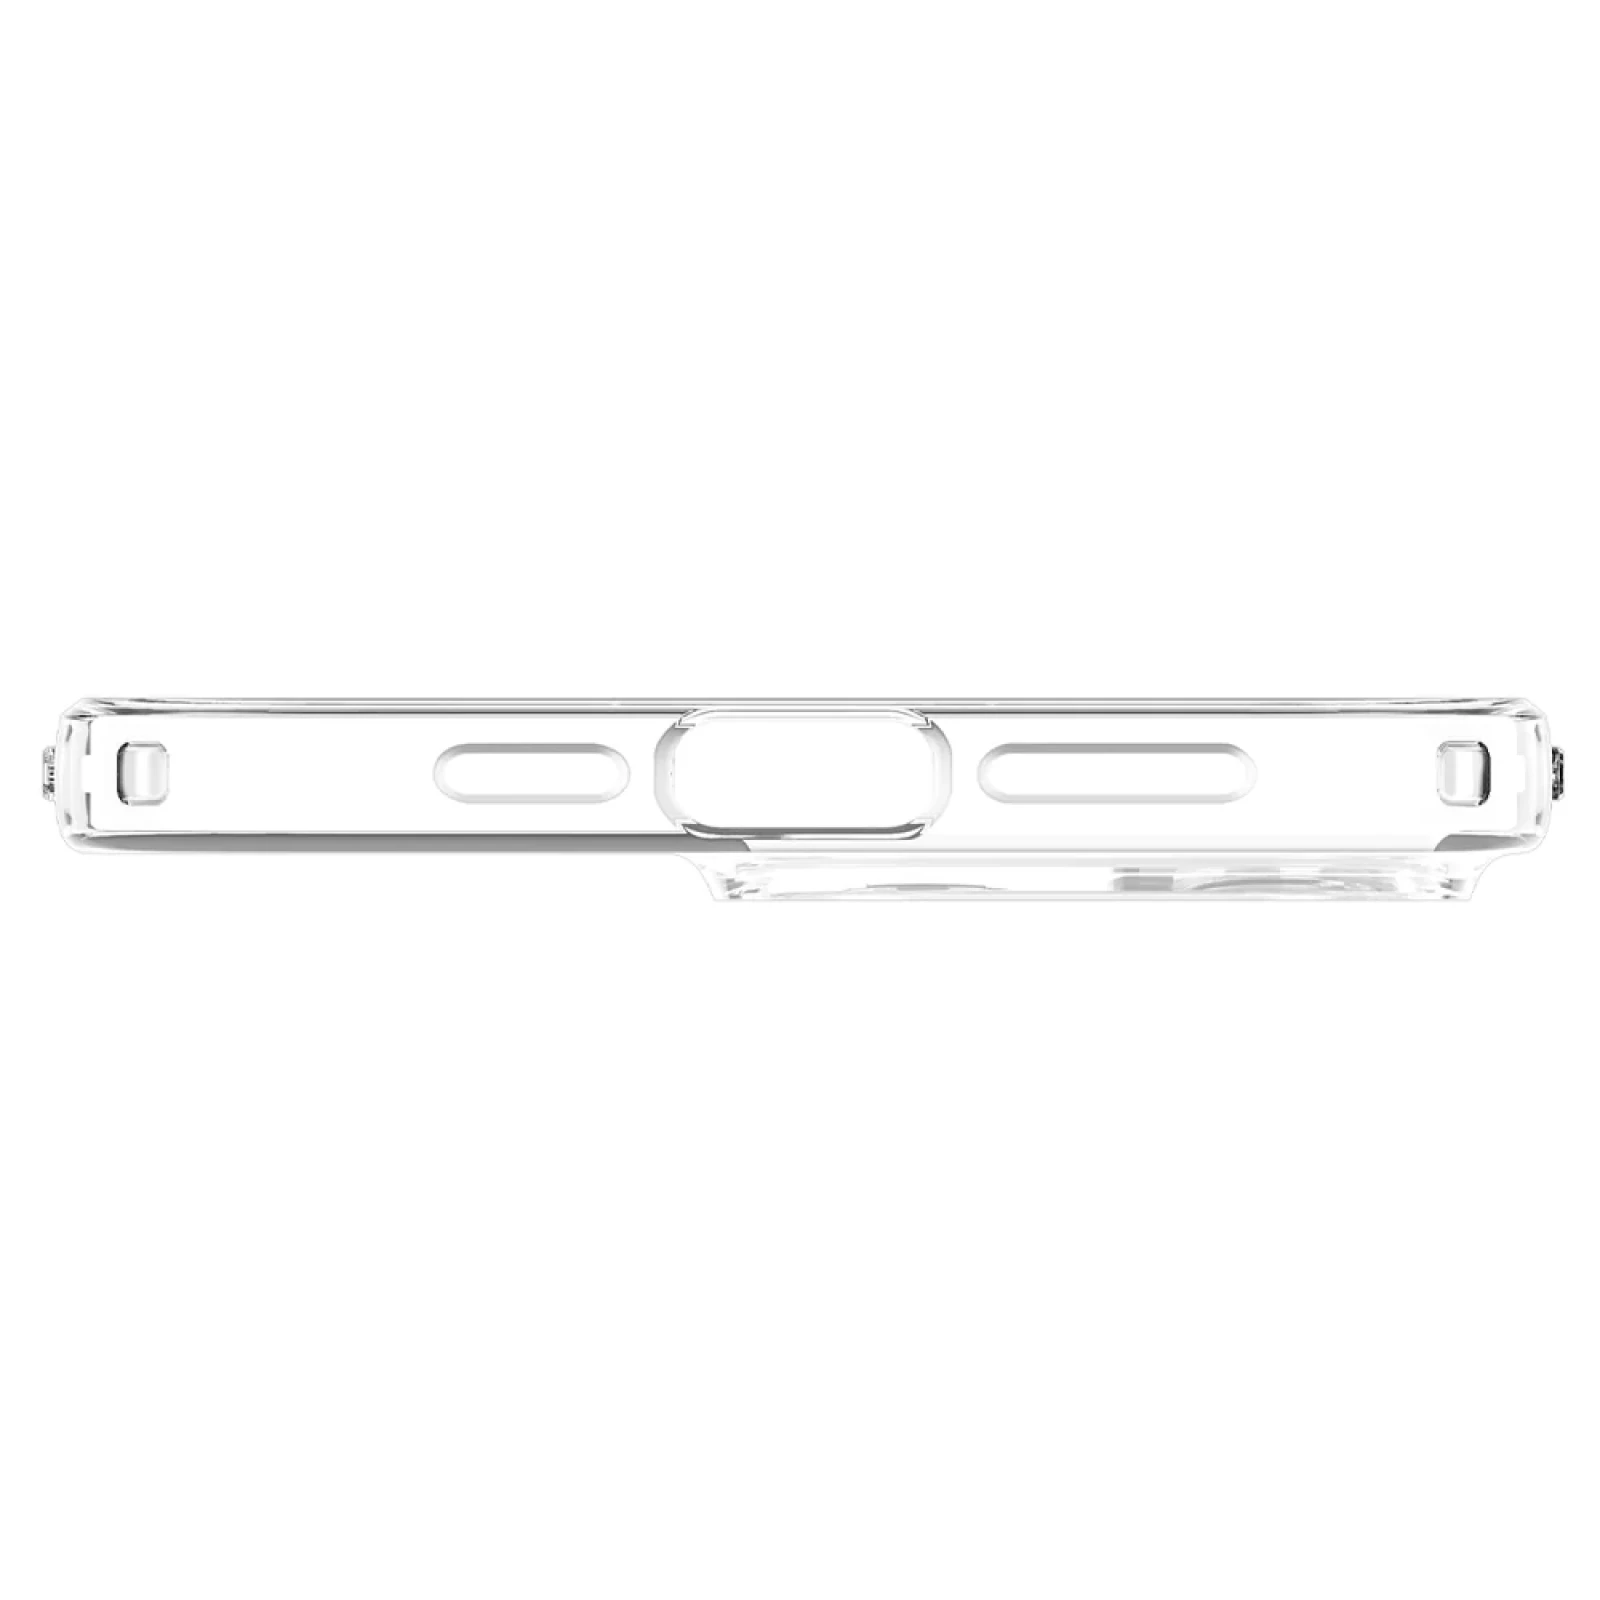 Гръб Spigen Liquid Crystal за iPhone 14 Pro - Прозрачен